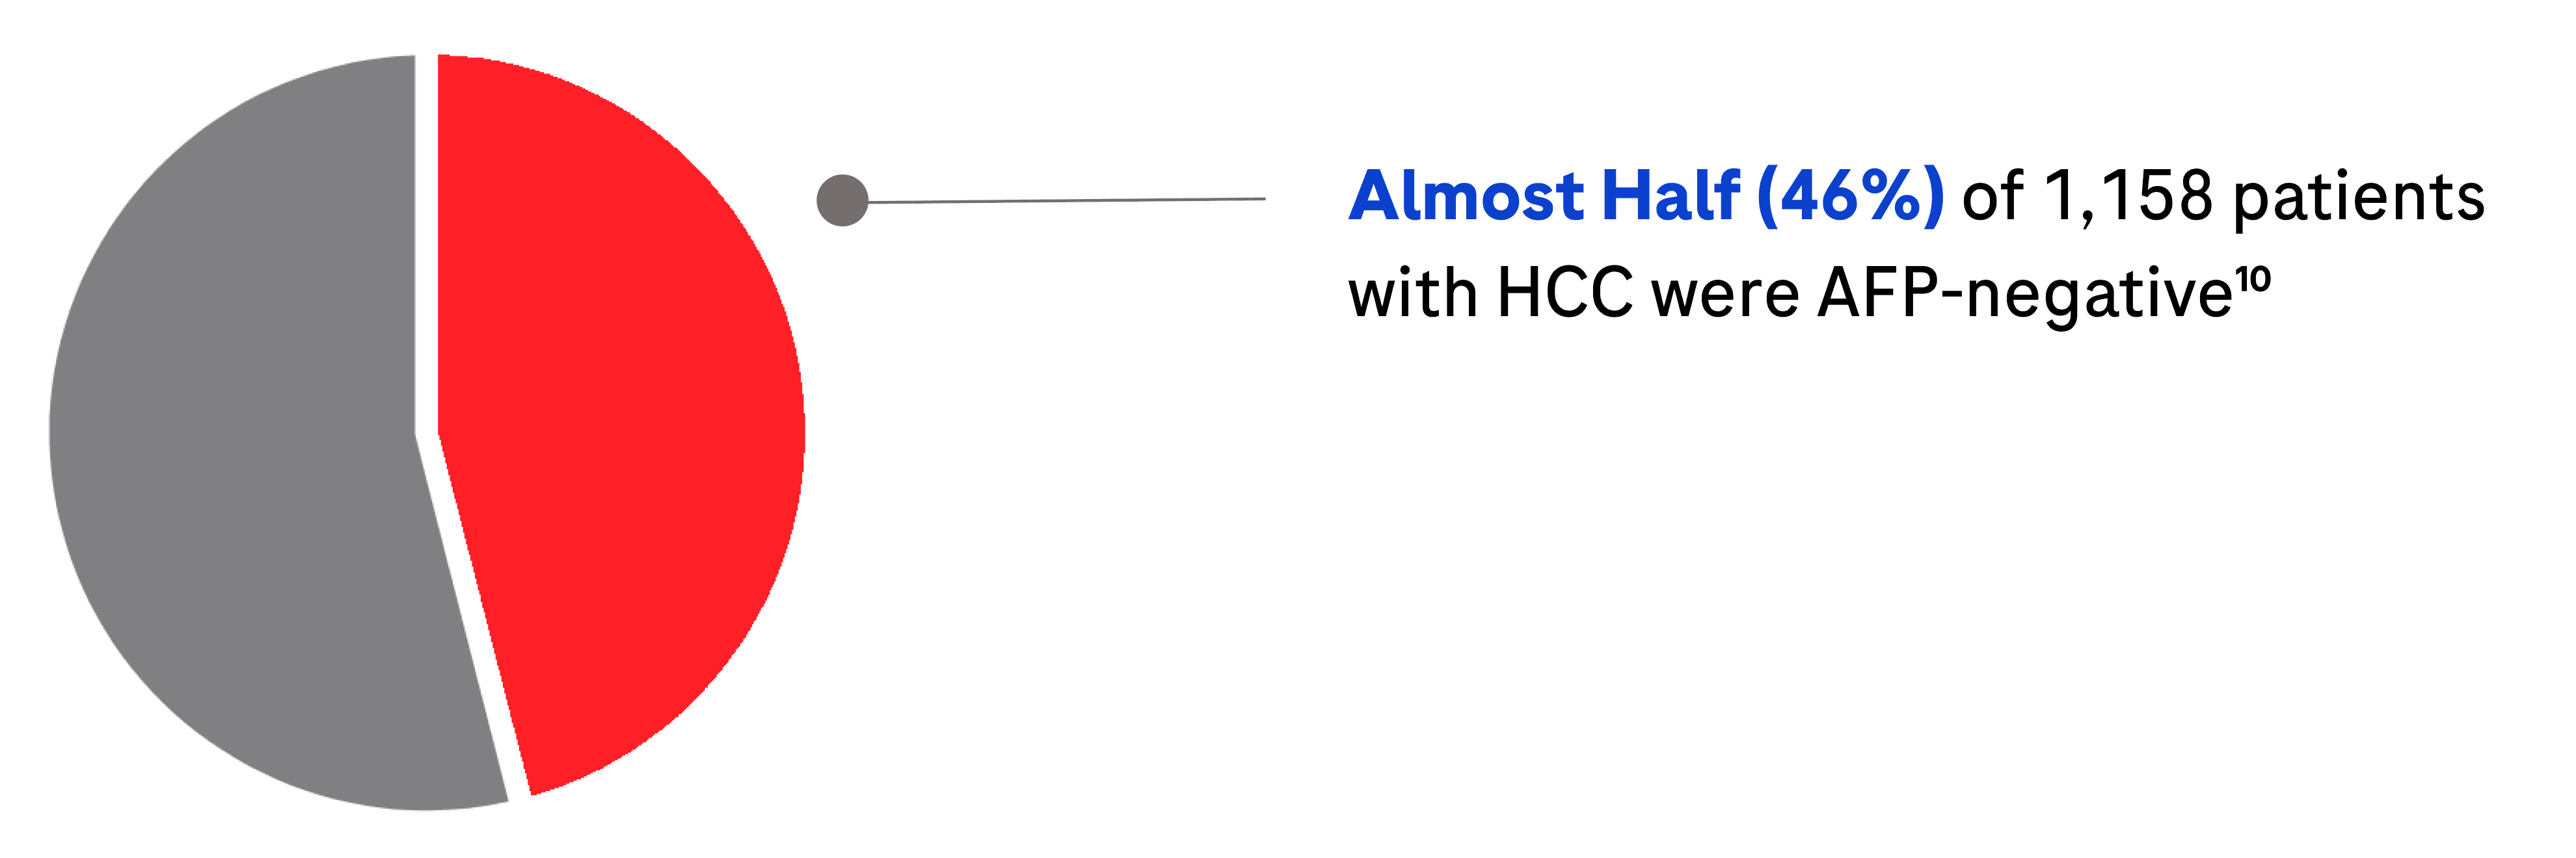 HCC Dection cc Pie chart